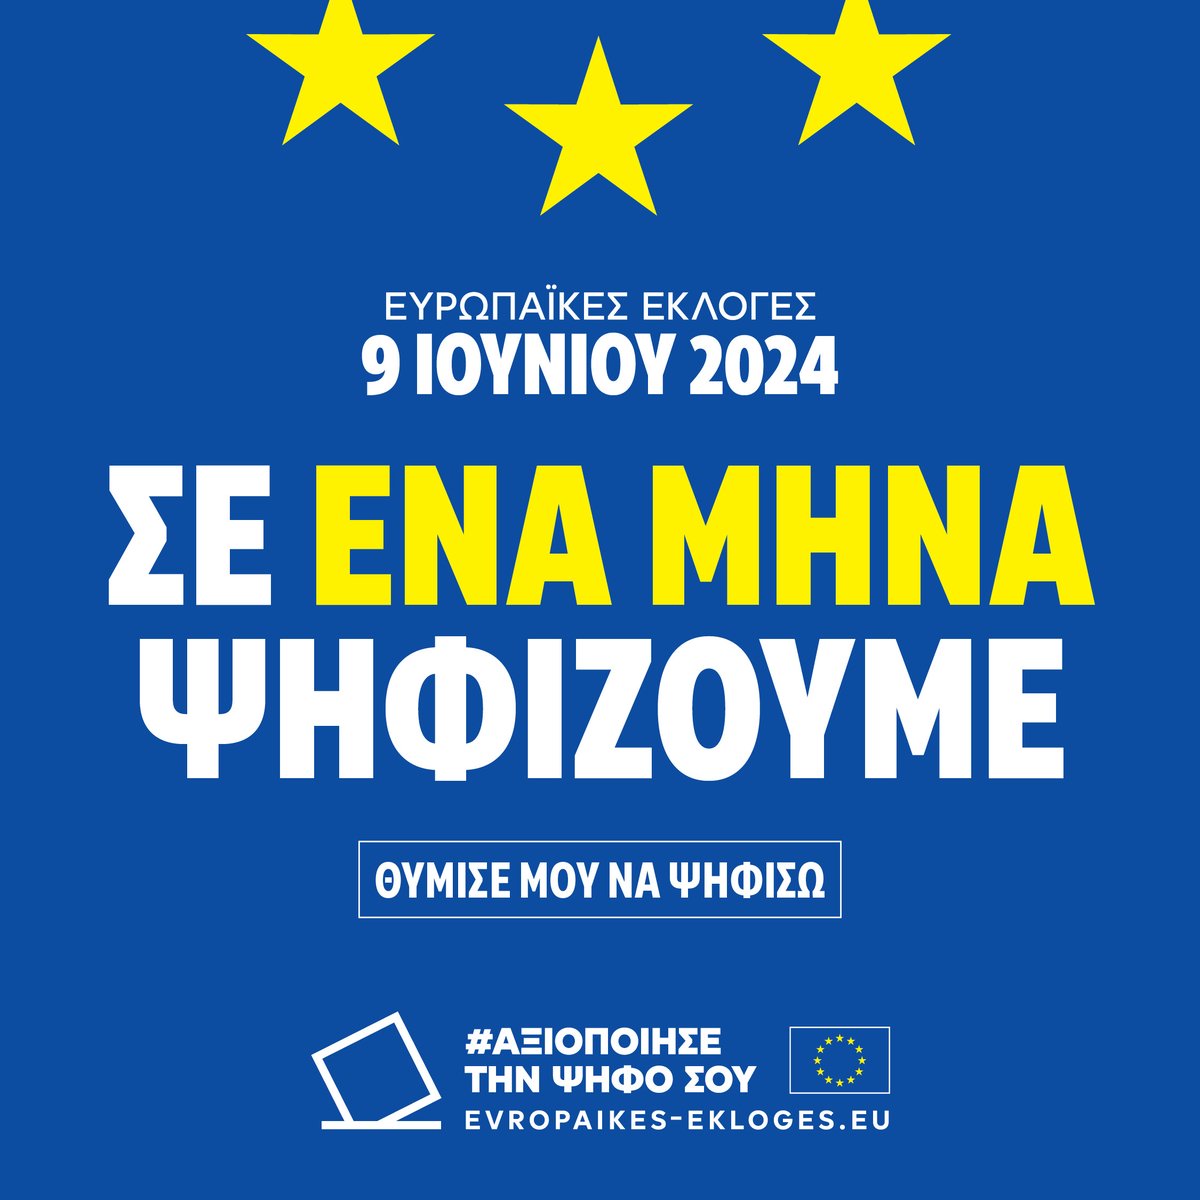 🇪🇺 Φέτος, η Ημέρα της Ευρώπης αποκτά ακόμη μεγαλύτερη σημασία καθώς σε ένα μήνα έχουμε #Ευρωεκλογές2024. #ΑξιοποίησεΤηνΨήφοΣου για να μην αποφασίσουν άλλοι για σένα. #UseYourVote #EUelections2024 #EuropeDay #EuropeDay2024